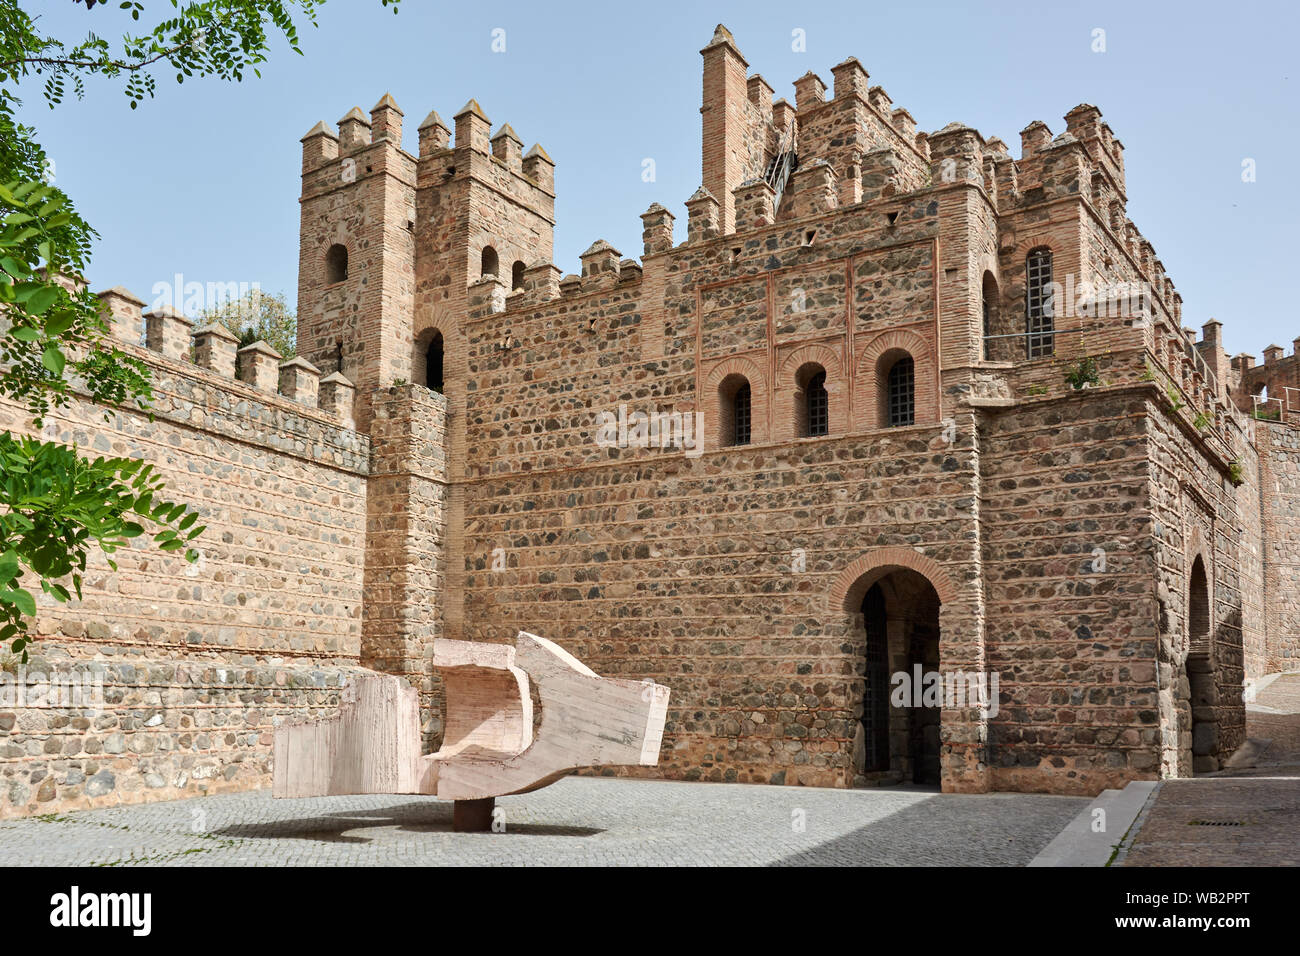 TOLEDO, Spanien - 24 April 2018: Alte befestigte Konstruktion und Mauern, der Teil der alten Bisagra Tor oder Gitter von Alfonso VI., in Toledo. Stockfoto